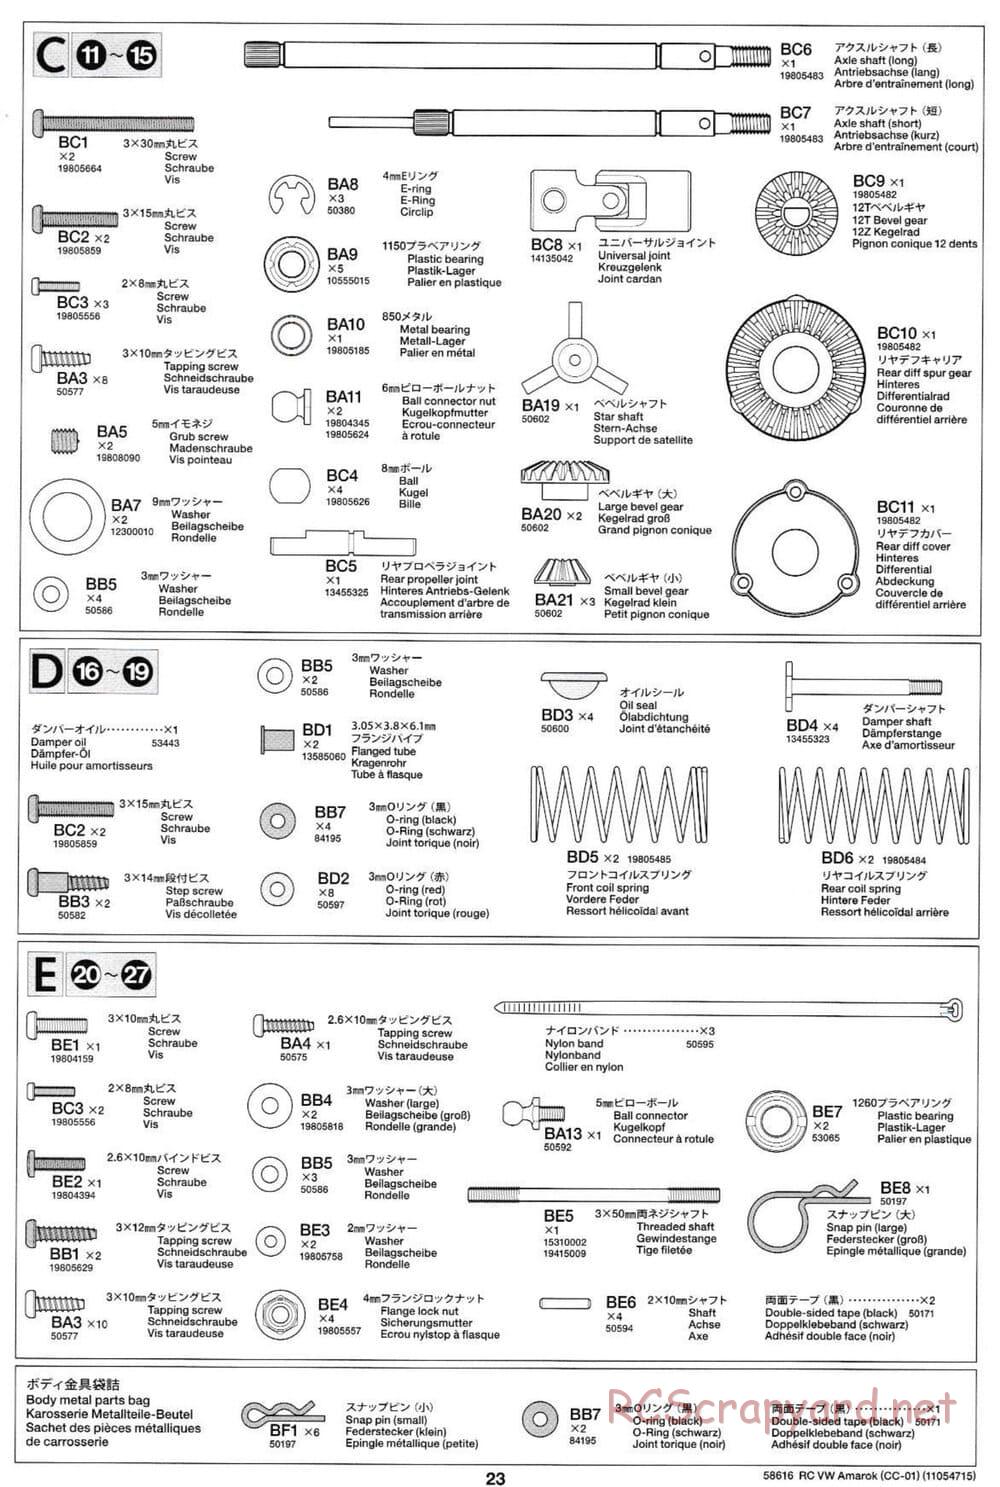 Tamiya - Volkswagen Amarok - CC-01 Chassis - Manual - Page 23